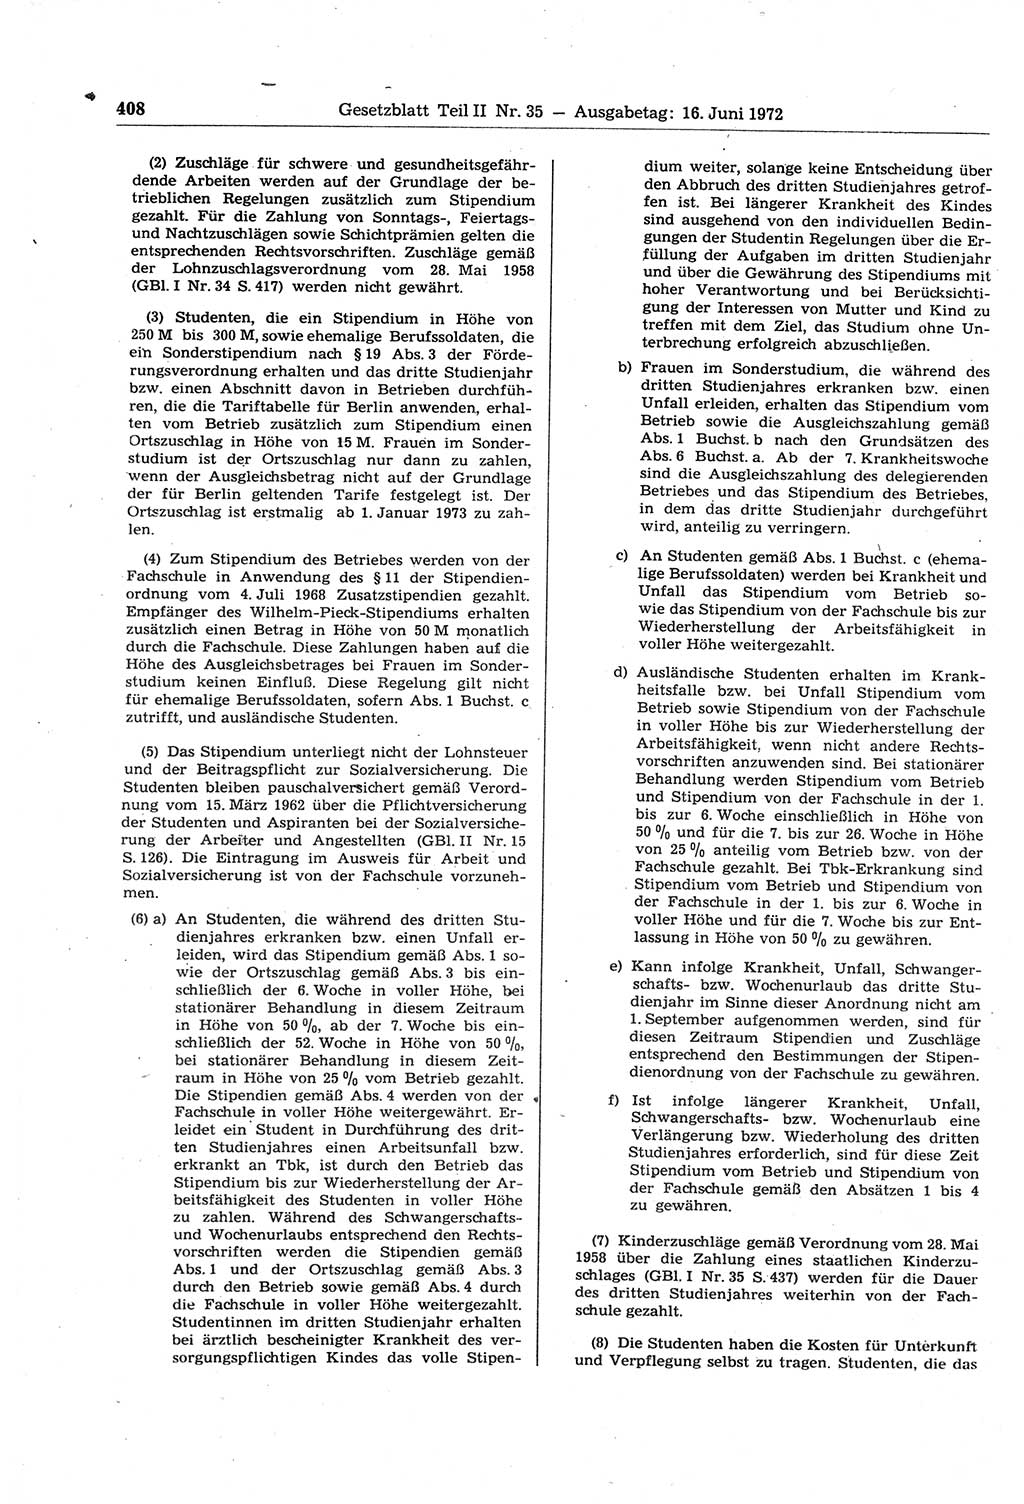 Gesetzblatt (GBl.) der Deutschen Demokratischen Republik (DDR) Teil ⅠⅠ 1972, Seite 408 (GBl. DDR ⅠⅠ 1972, S. 408)